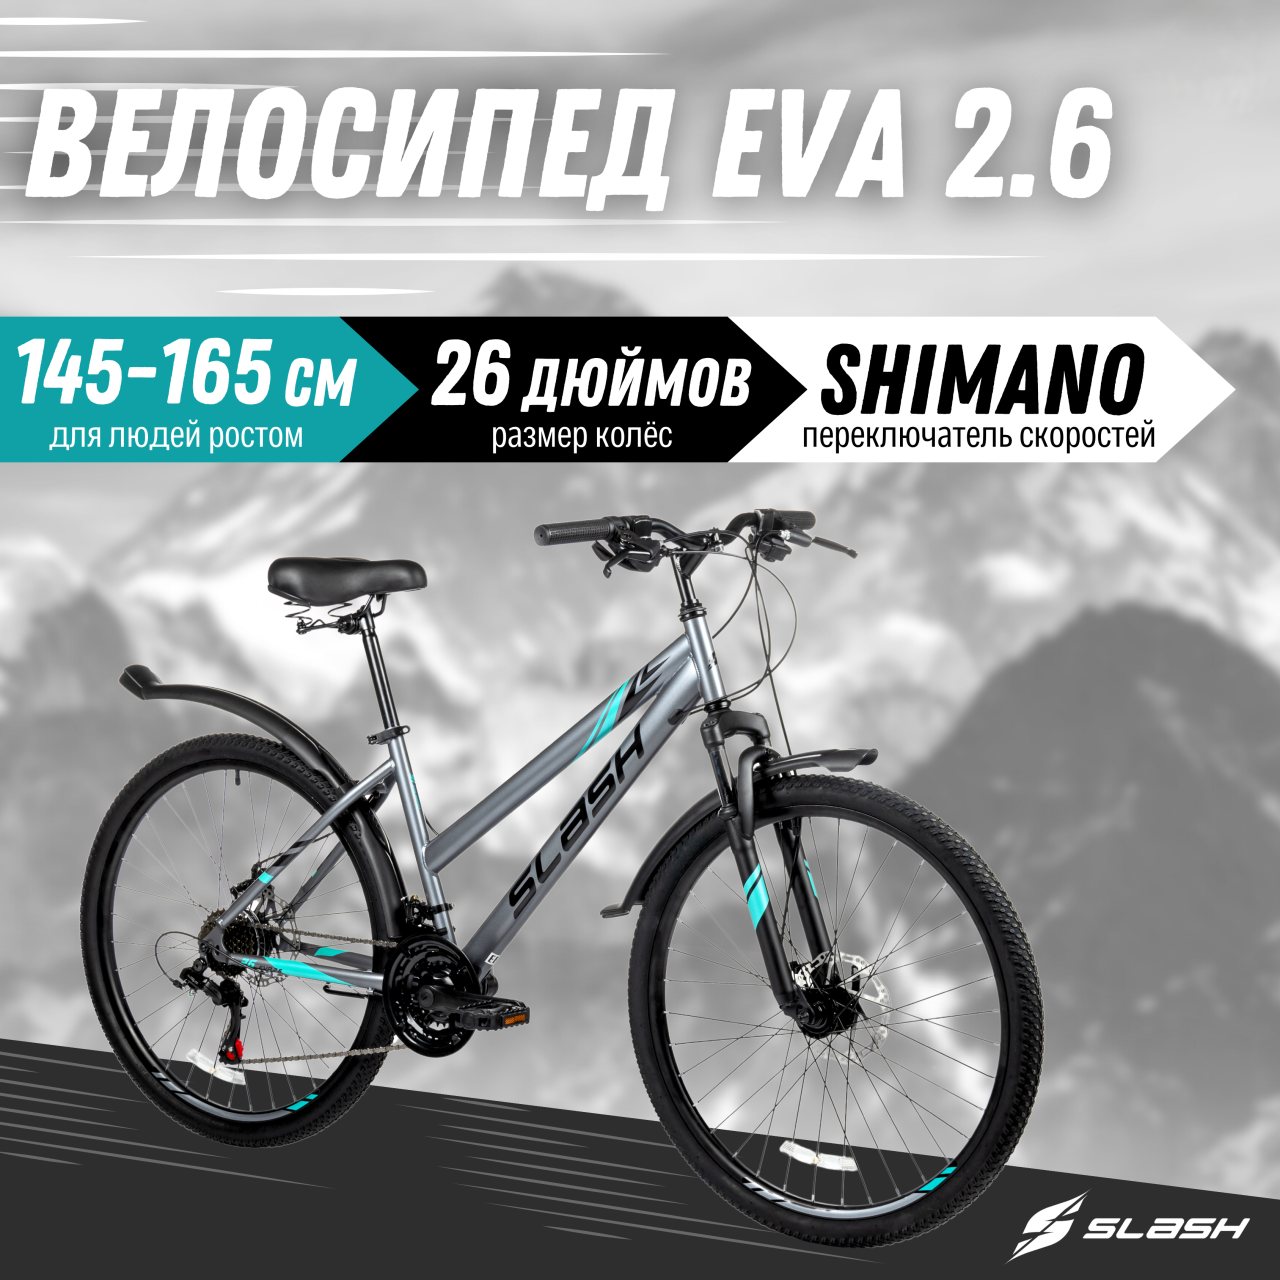 Горный велосипед Slash Eva серый, 27.5 дюймов колеса, 21 скорость, рост 145-165 см